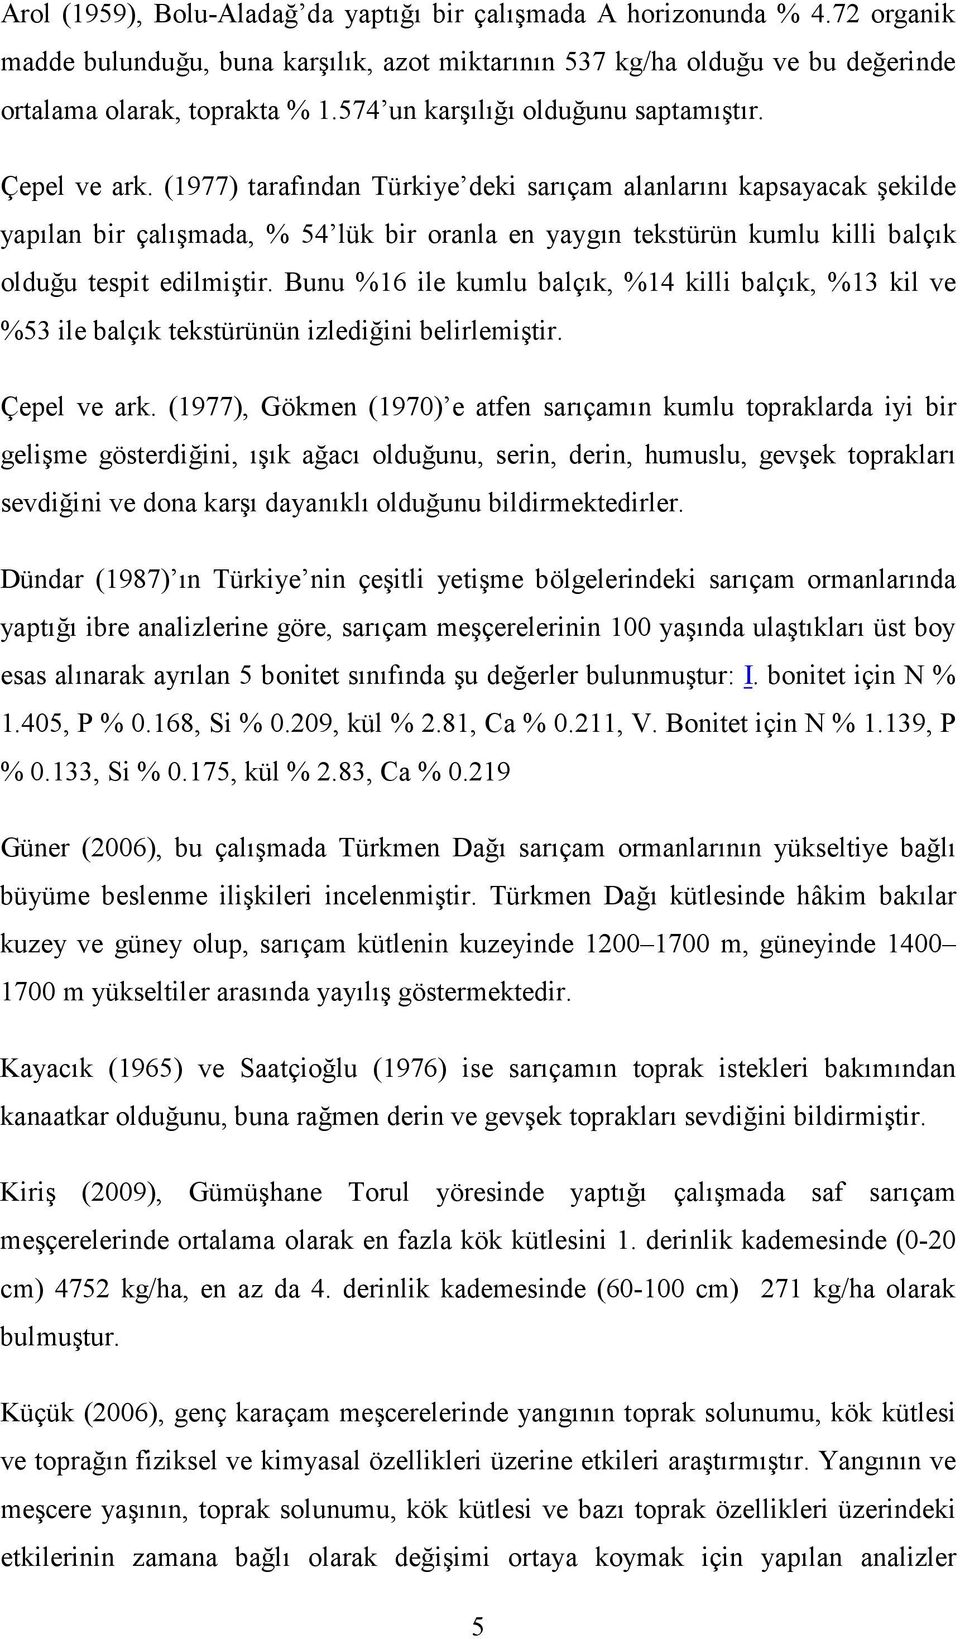 (1977) tarafından Türkiye deki sarıçam alanlarını kapsayacak şekilde yapılan bir çalışmada, % 54 lük bir oranla en yaygın tekstürün kumlu killi balçık olduğu tespit edilmiştir.